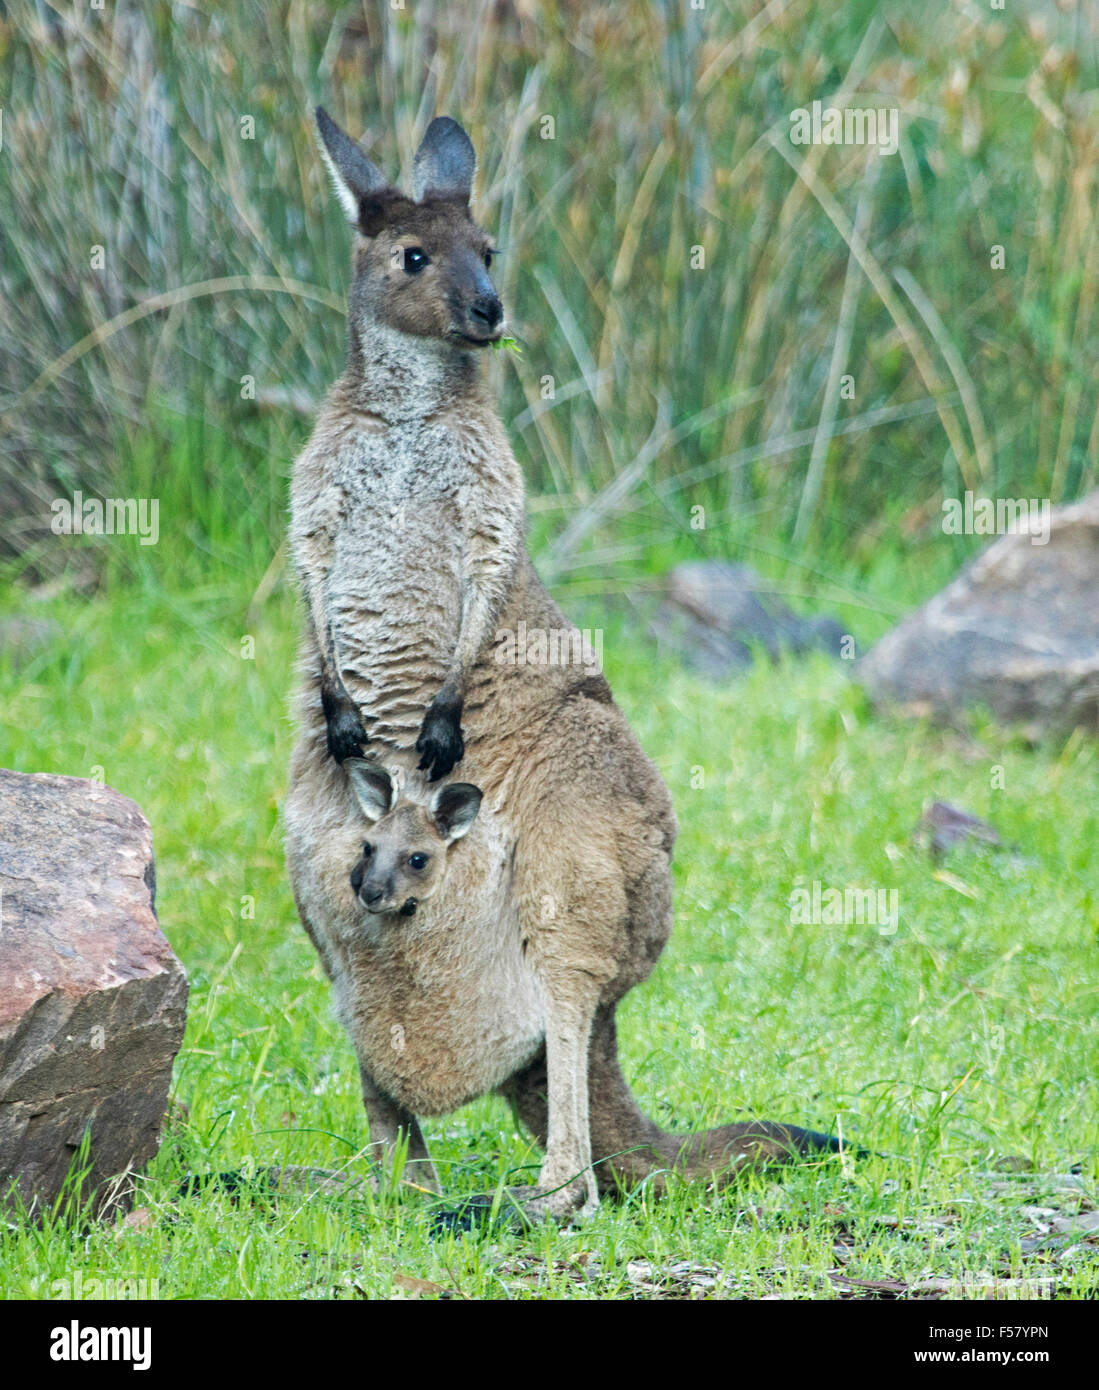 Weibliche westliche graue Känguru, Macropus Fulginosus mit Joey peering von Beutel & grass in Mund im Outback Australien Stockfoto